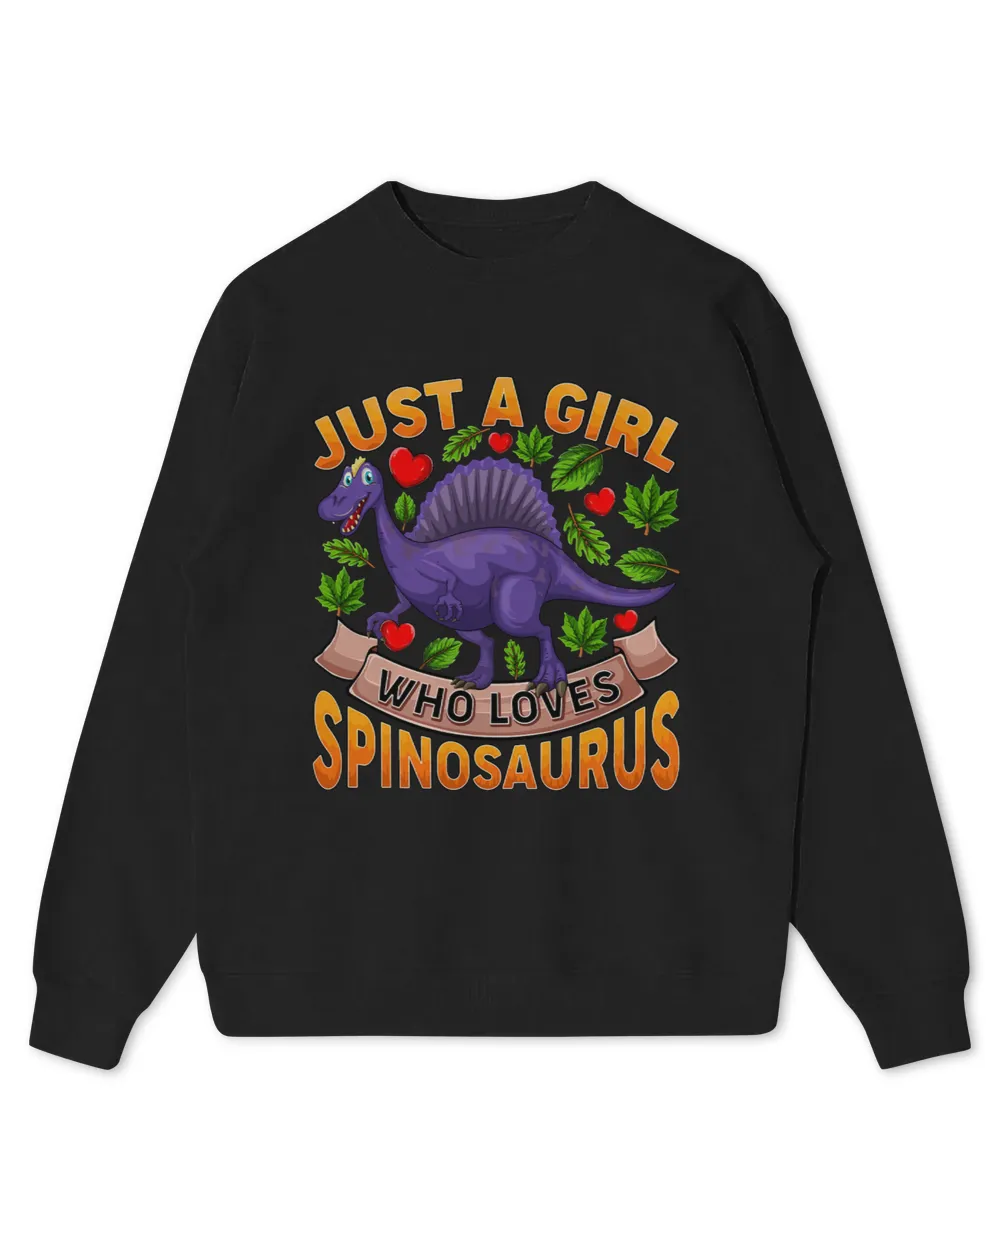 Spinosaurus Dinosaur Lover Just A Girl Who Loves Spinosaurus